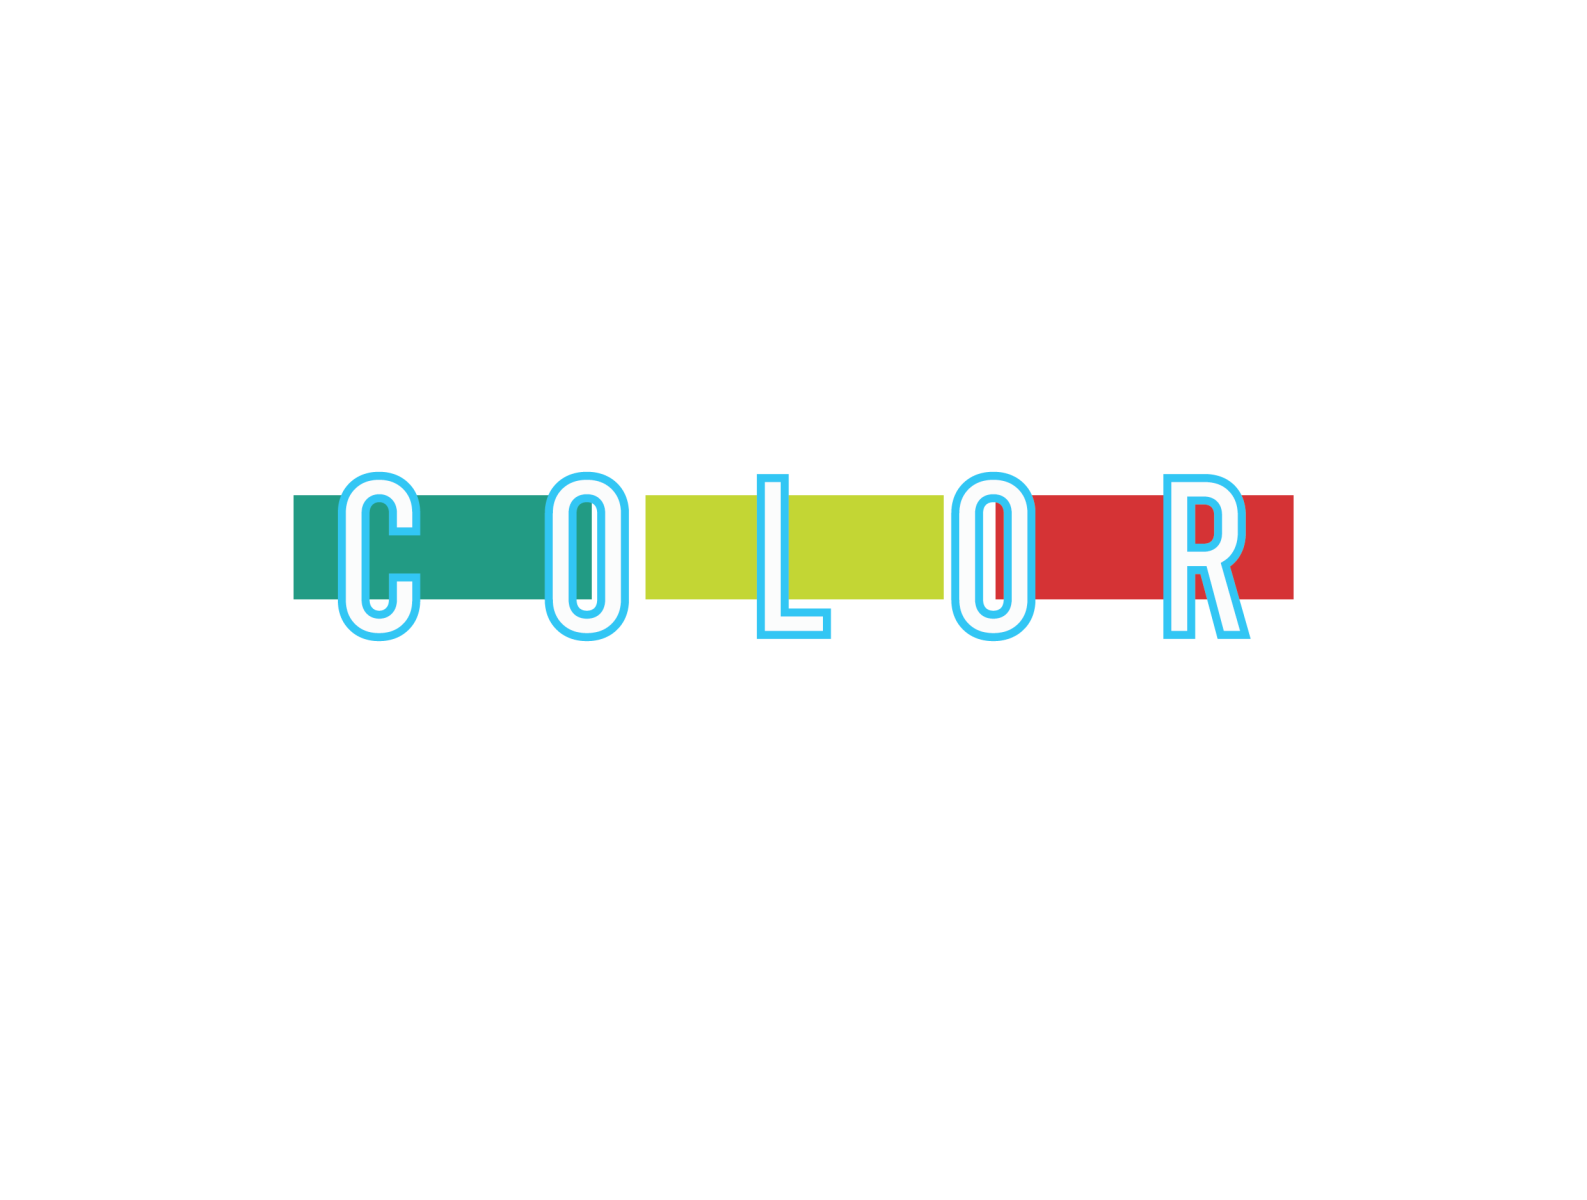 Color logo by Dipo wicaksono on Dribbble